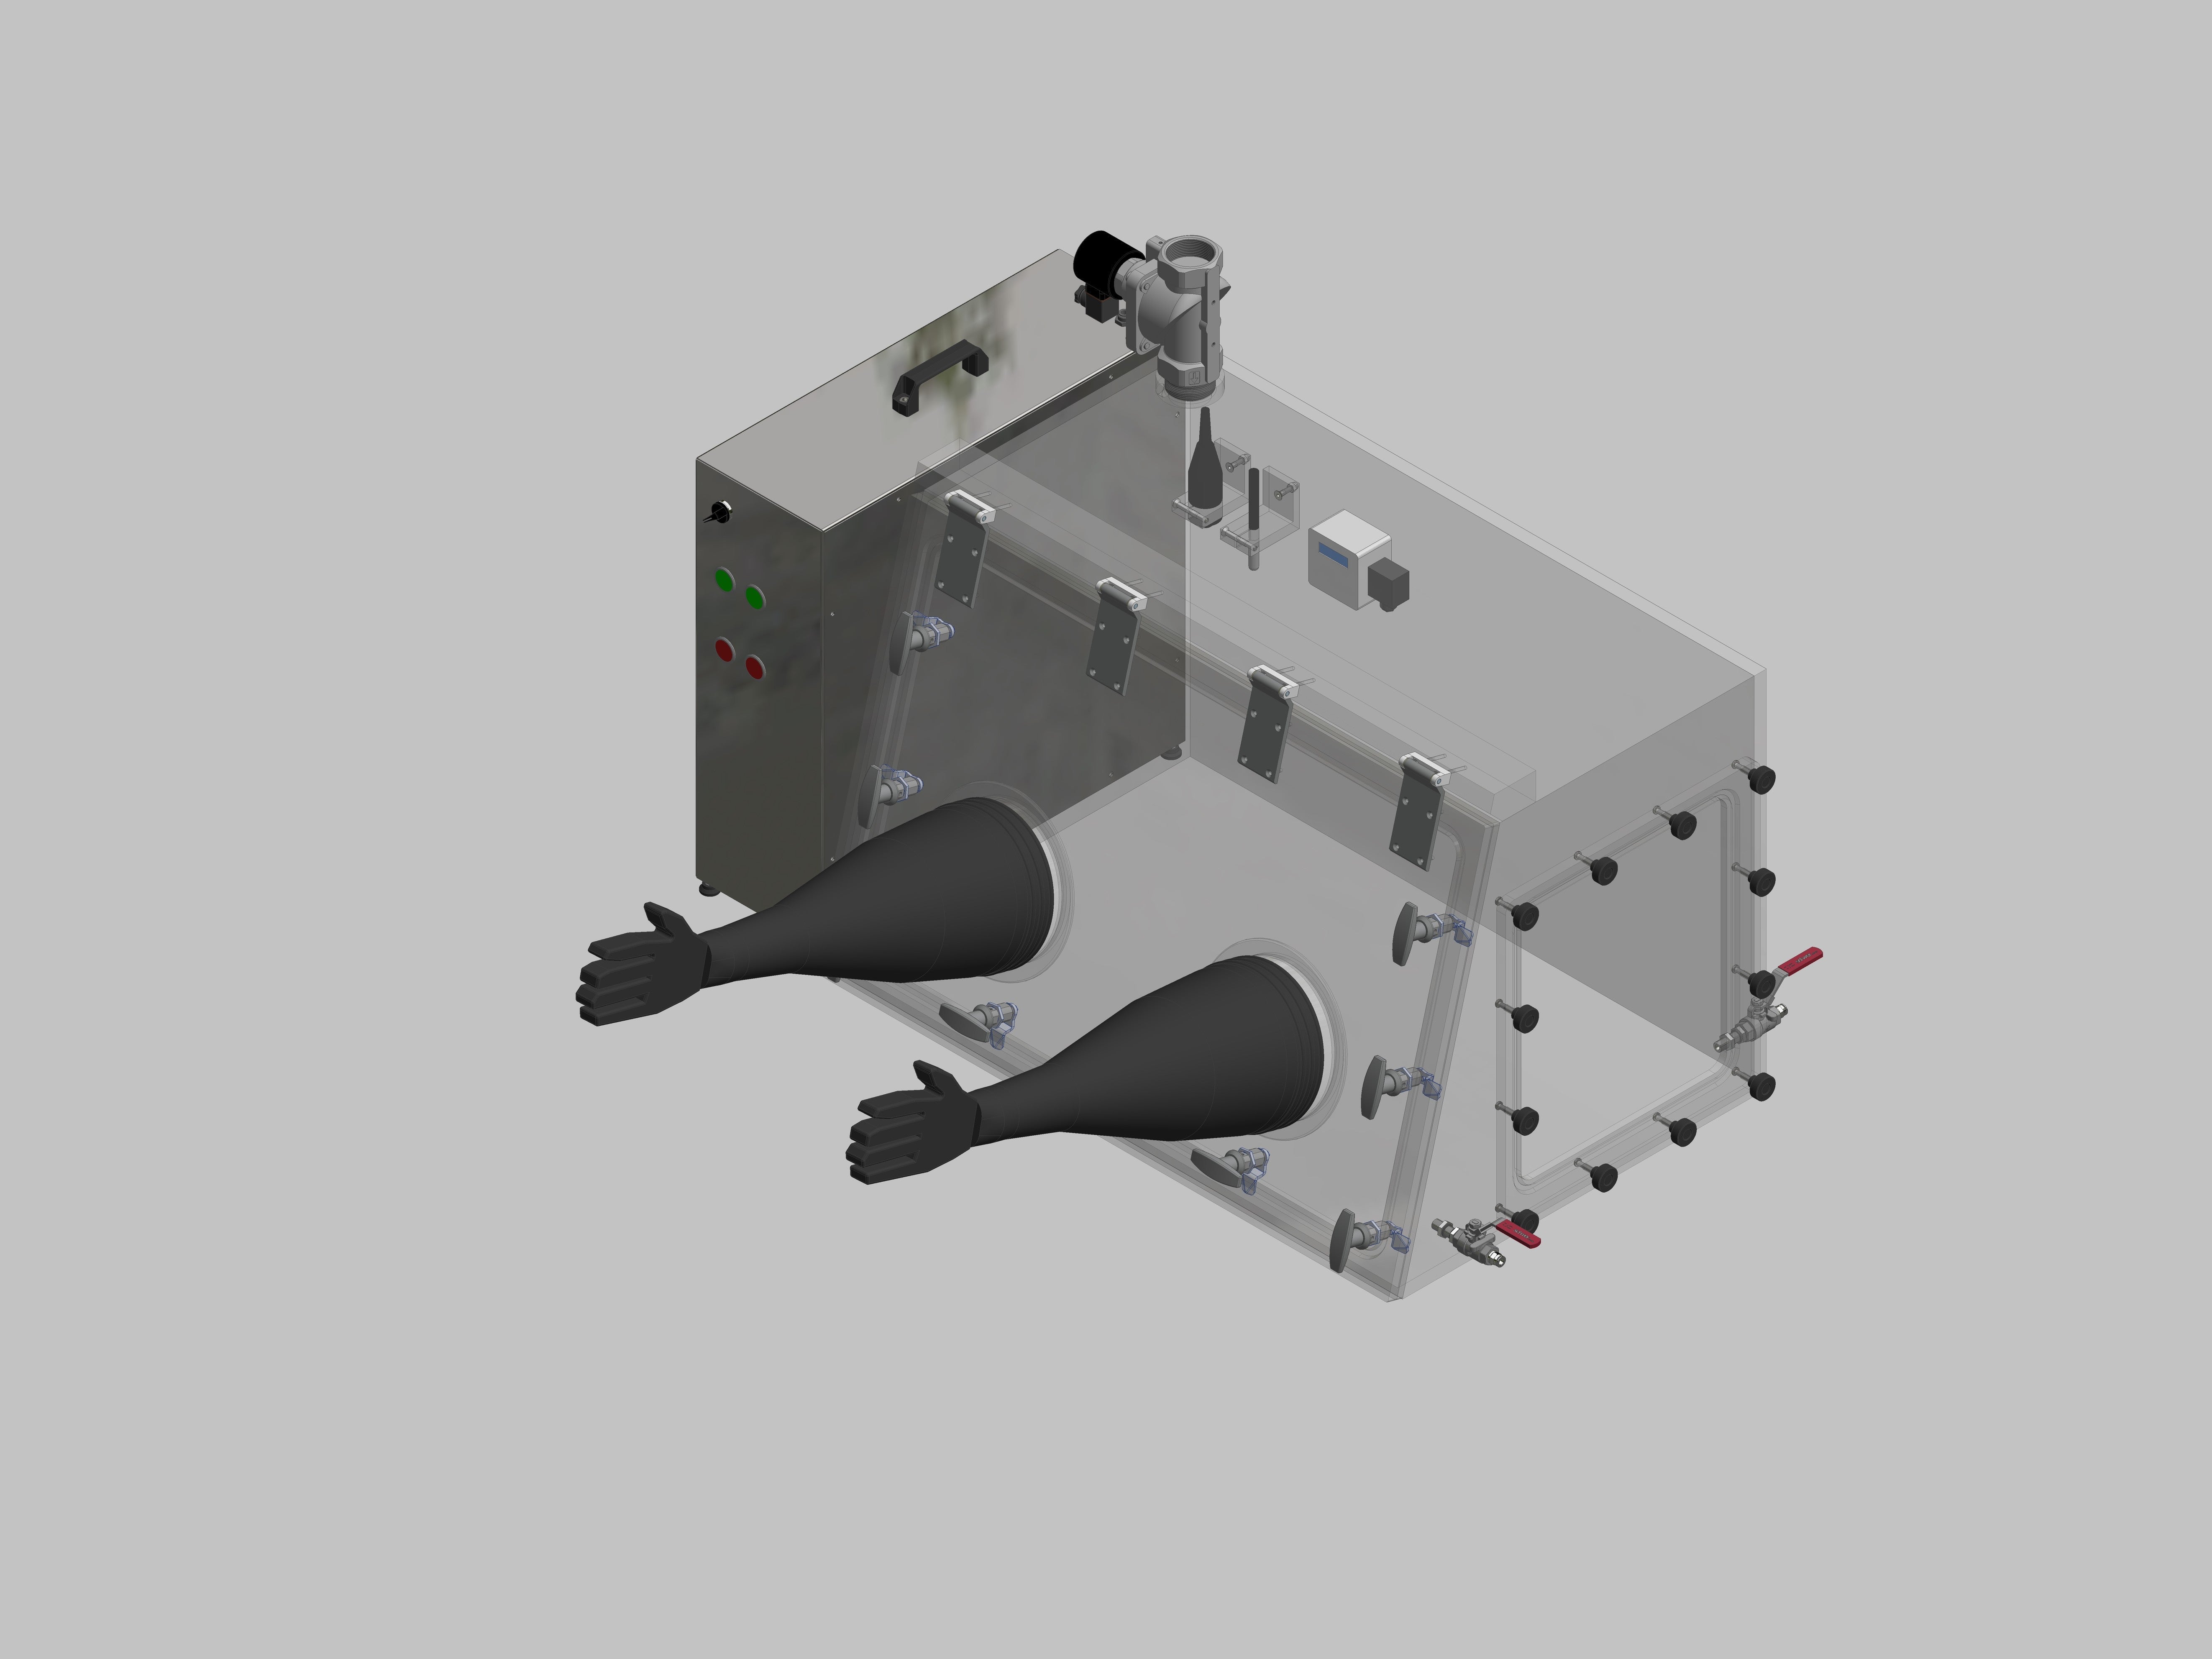 Glovebox aus Acryl> Gasbefüllung: Spülautomatik mit Druckregelung, Frontausführung: Schwenkbar nach oben, Seitenausführung: Flansch abnehmbar Steuerung: Sauerstoffregler mit Feuchteanzeige